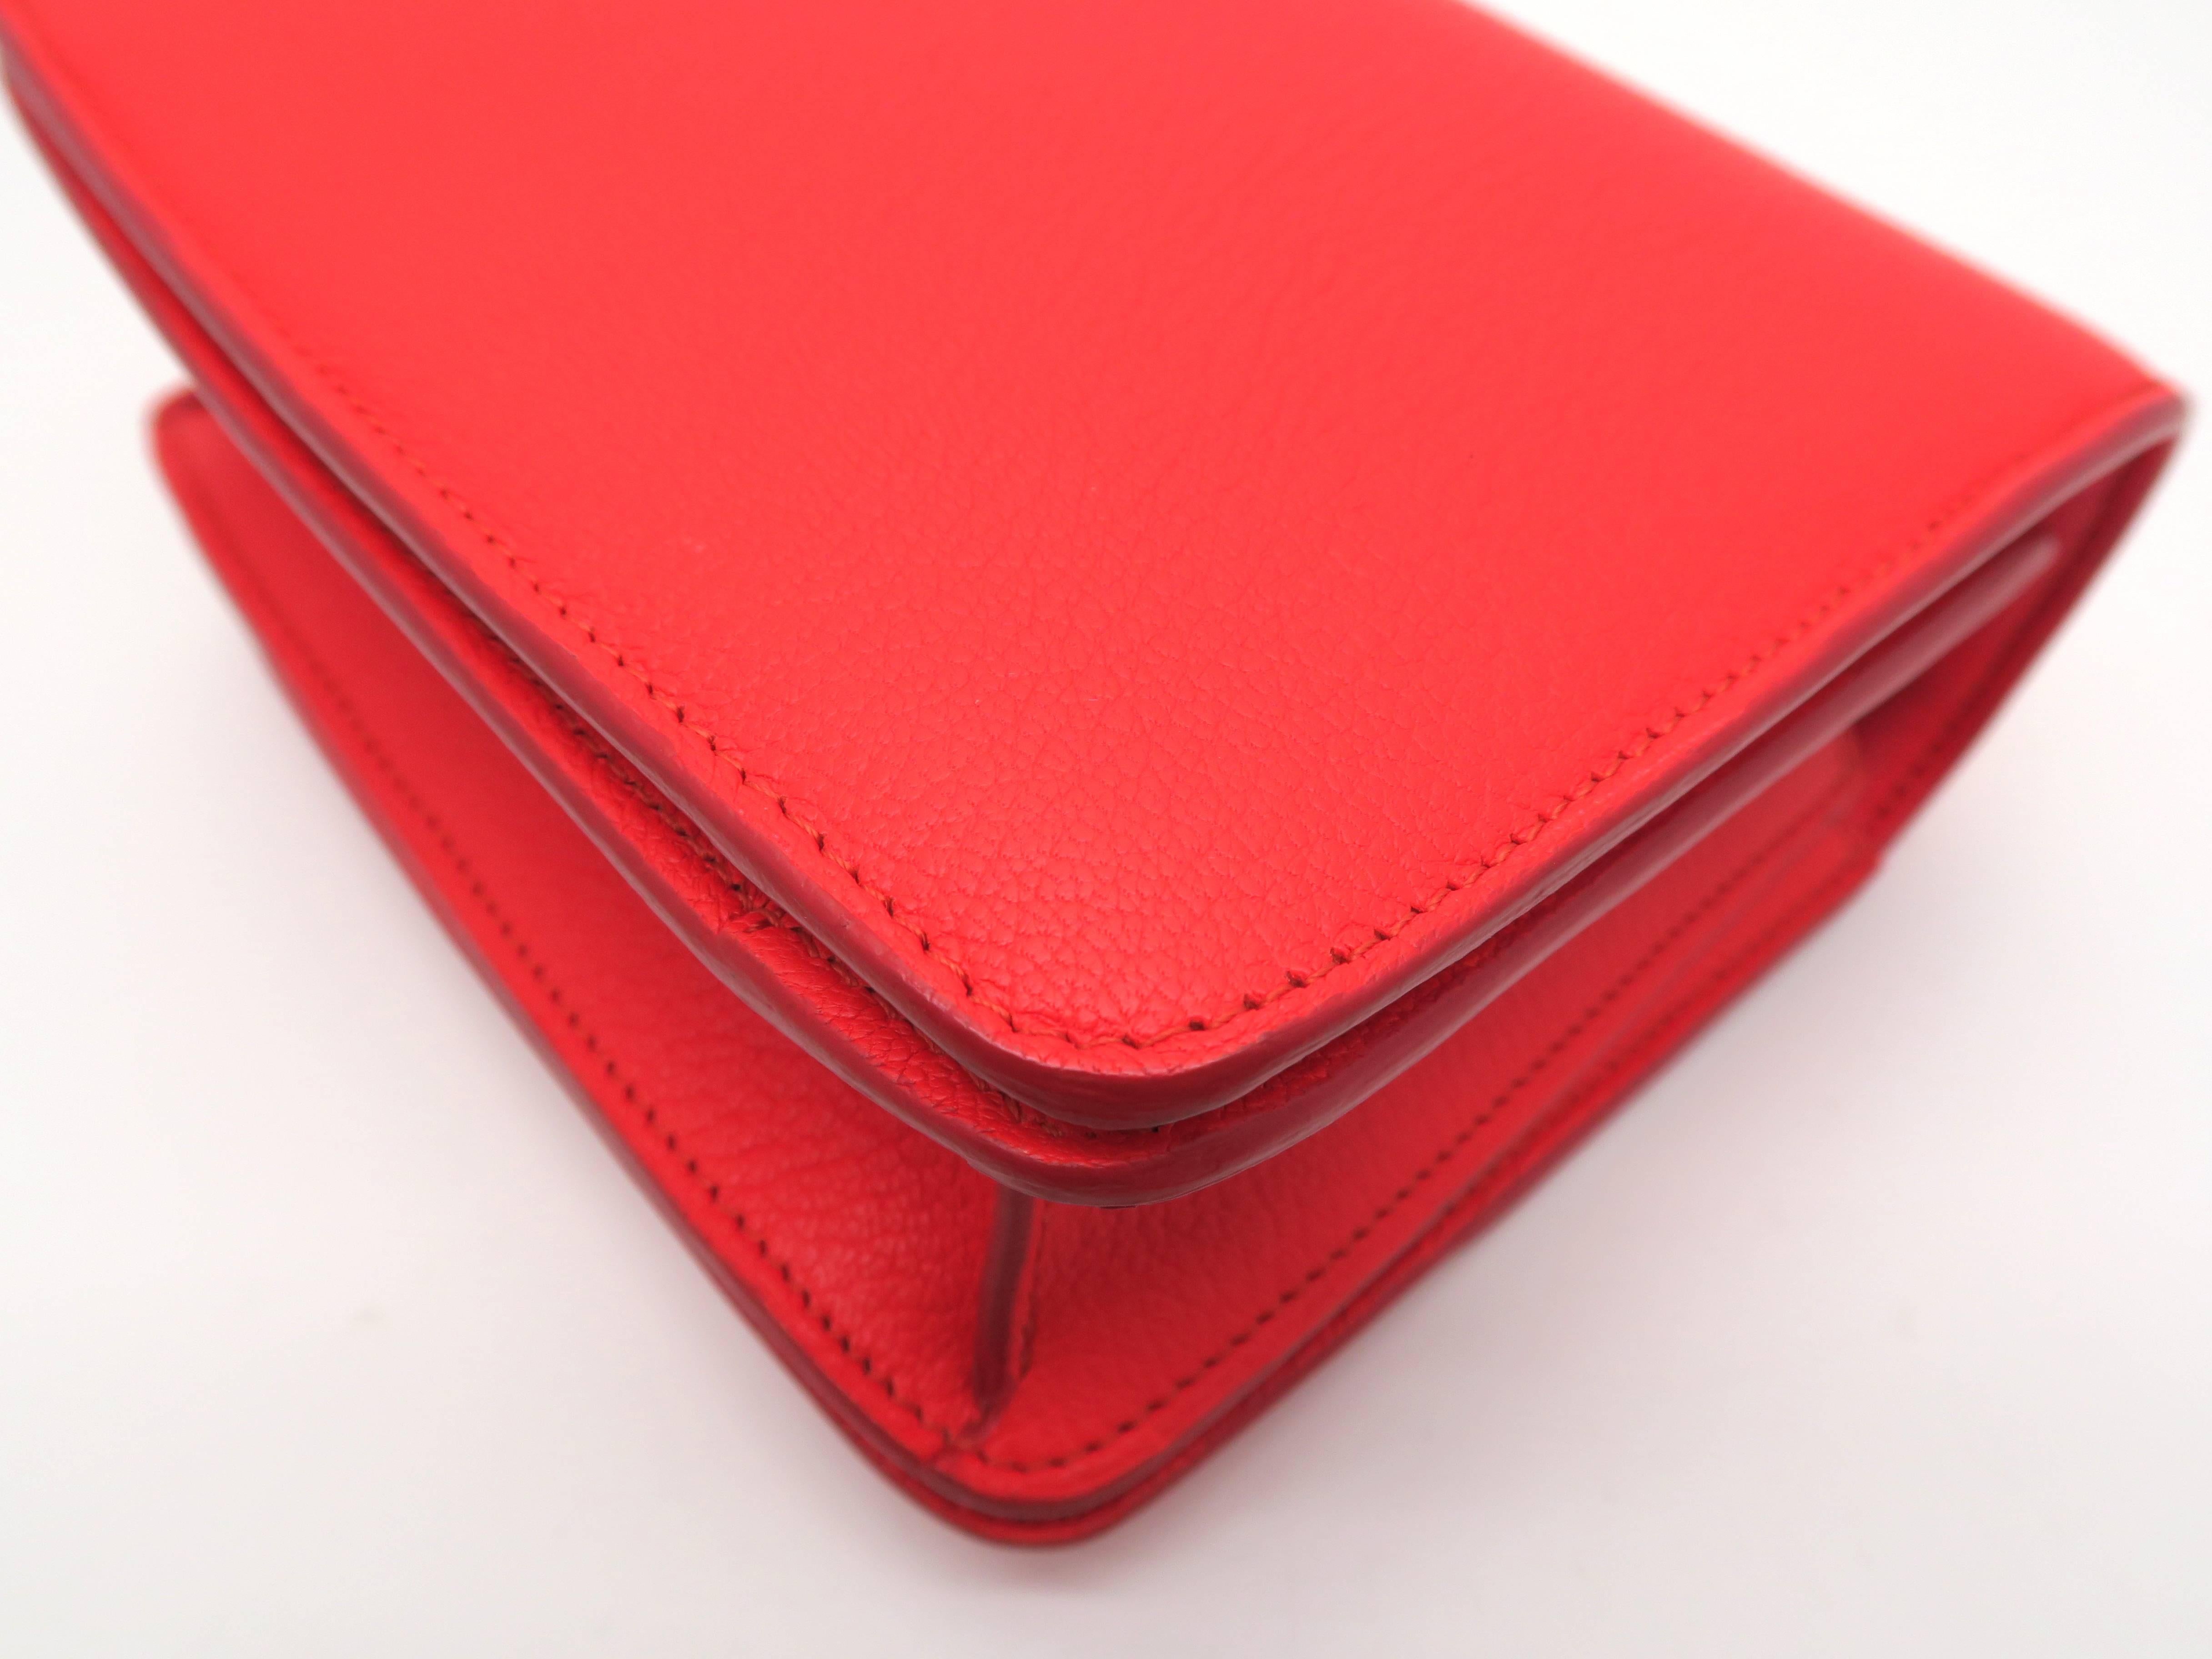 Celine Classic Box Red Calfskin Leather Shoulder Bag 2